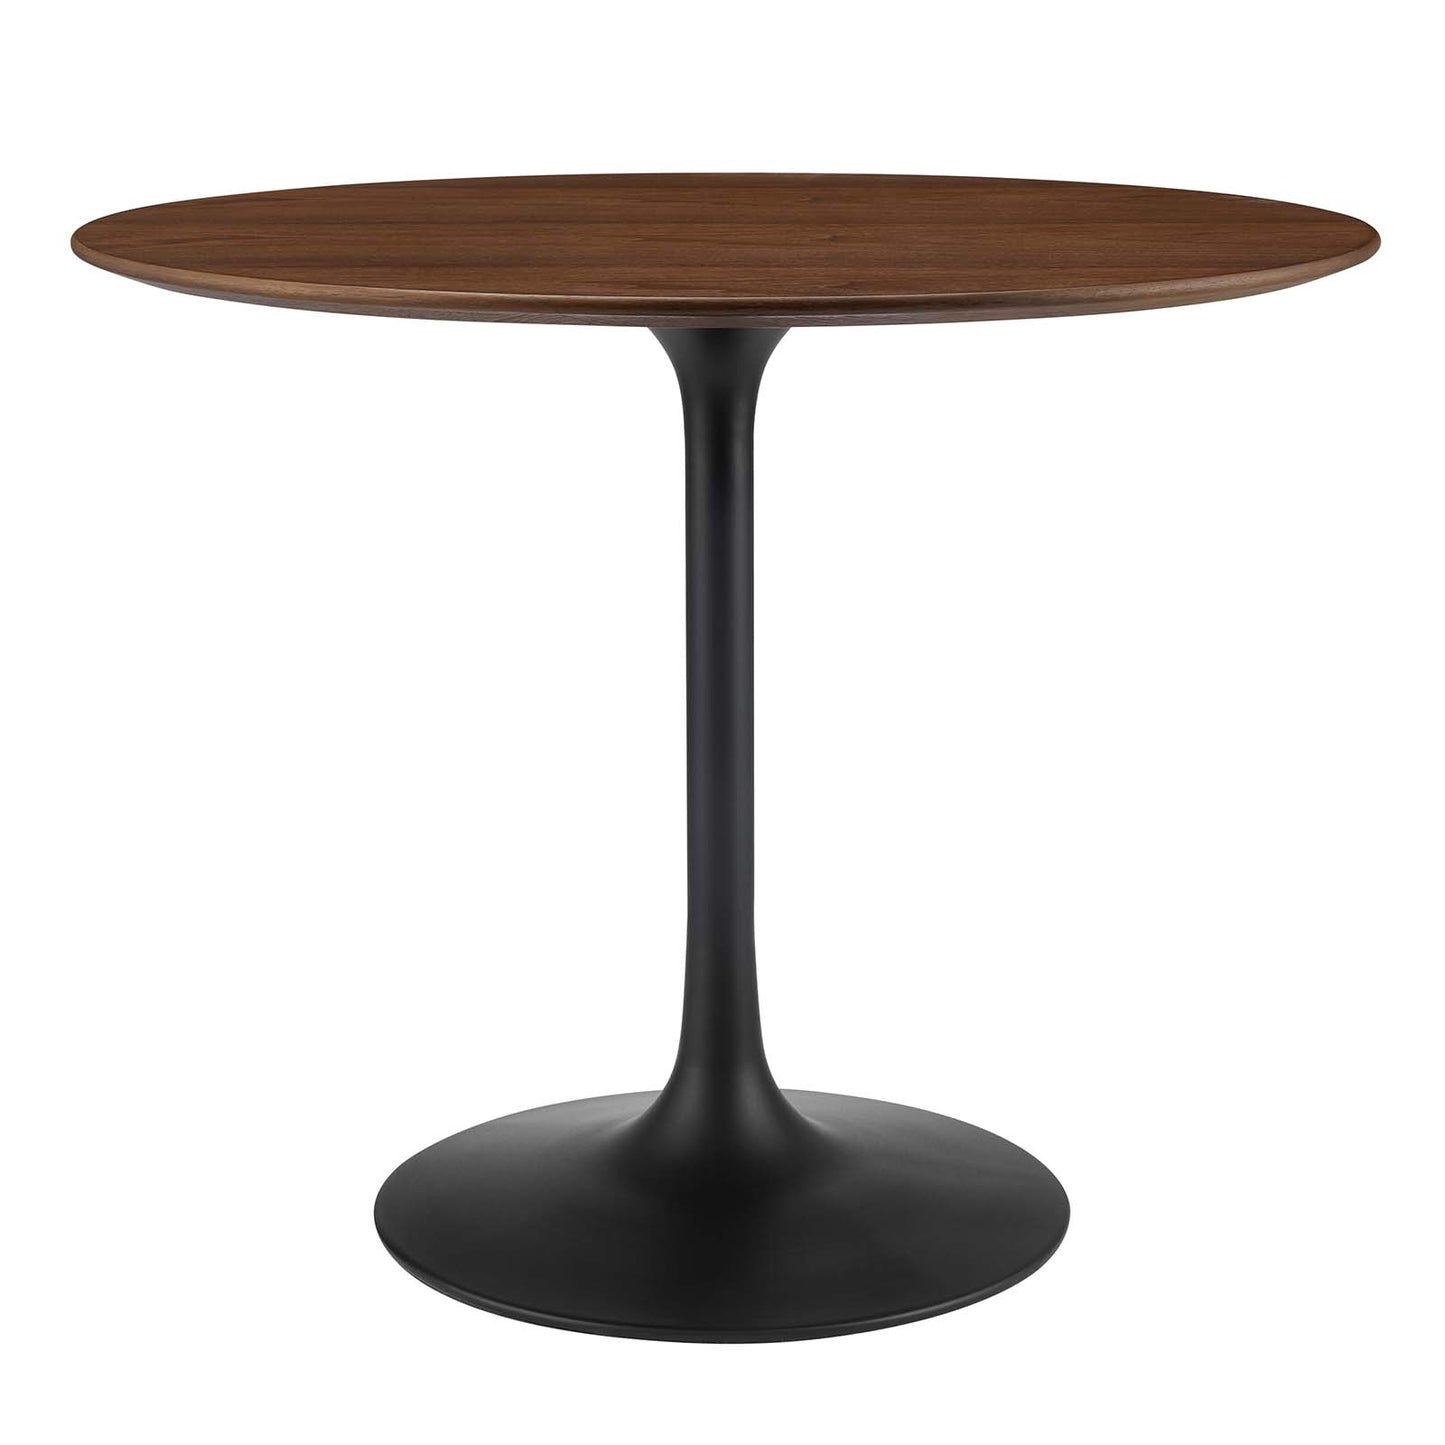 Modway Lippa 36" Round Walnut Dining Table - EEI-3519